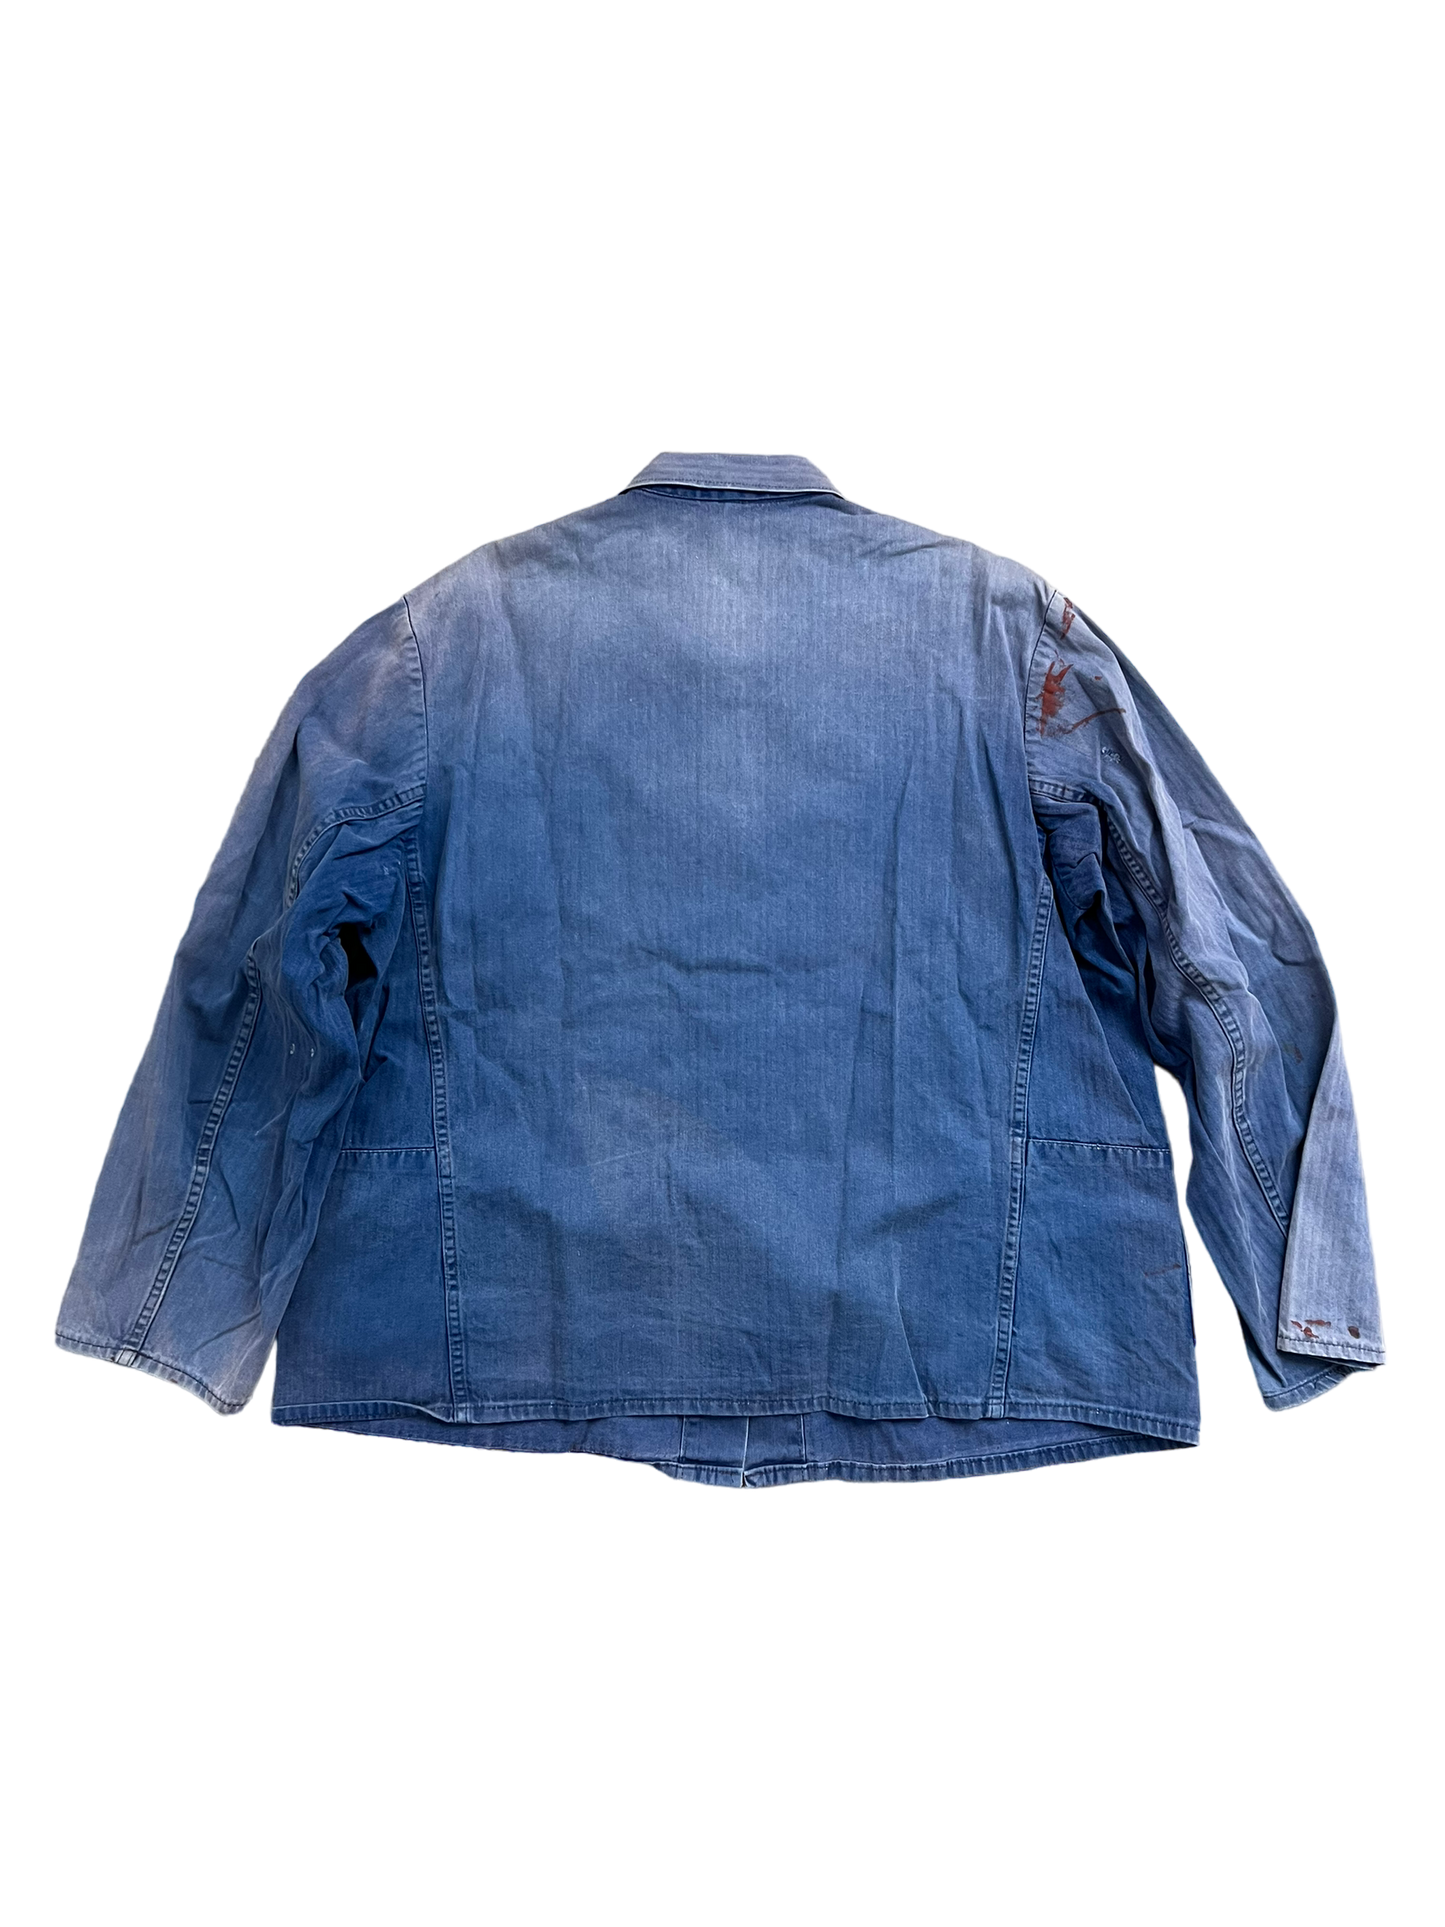 70’s French Chore Jacket